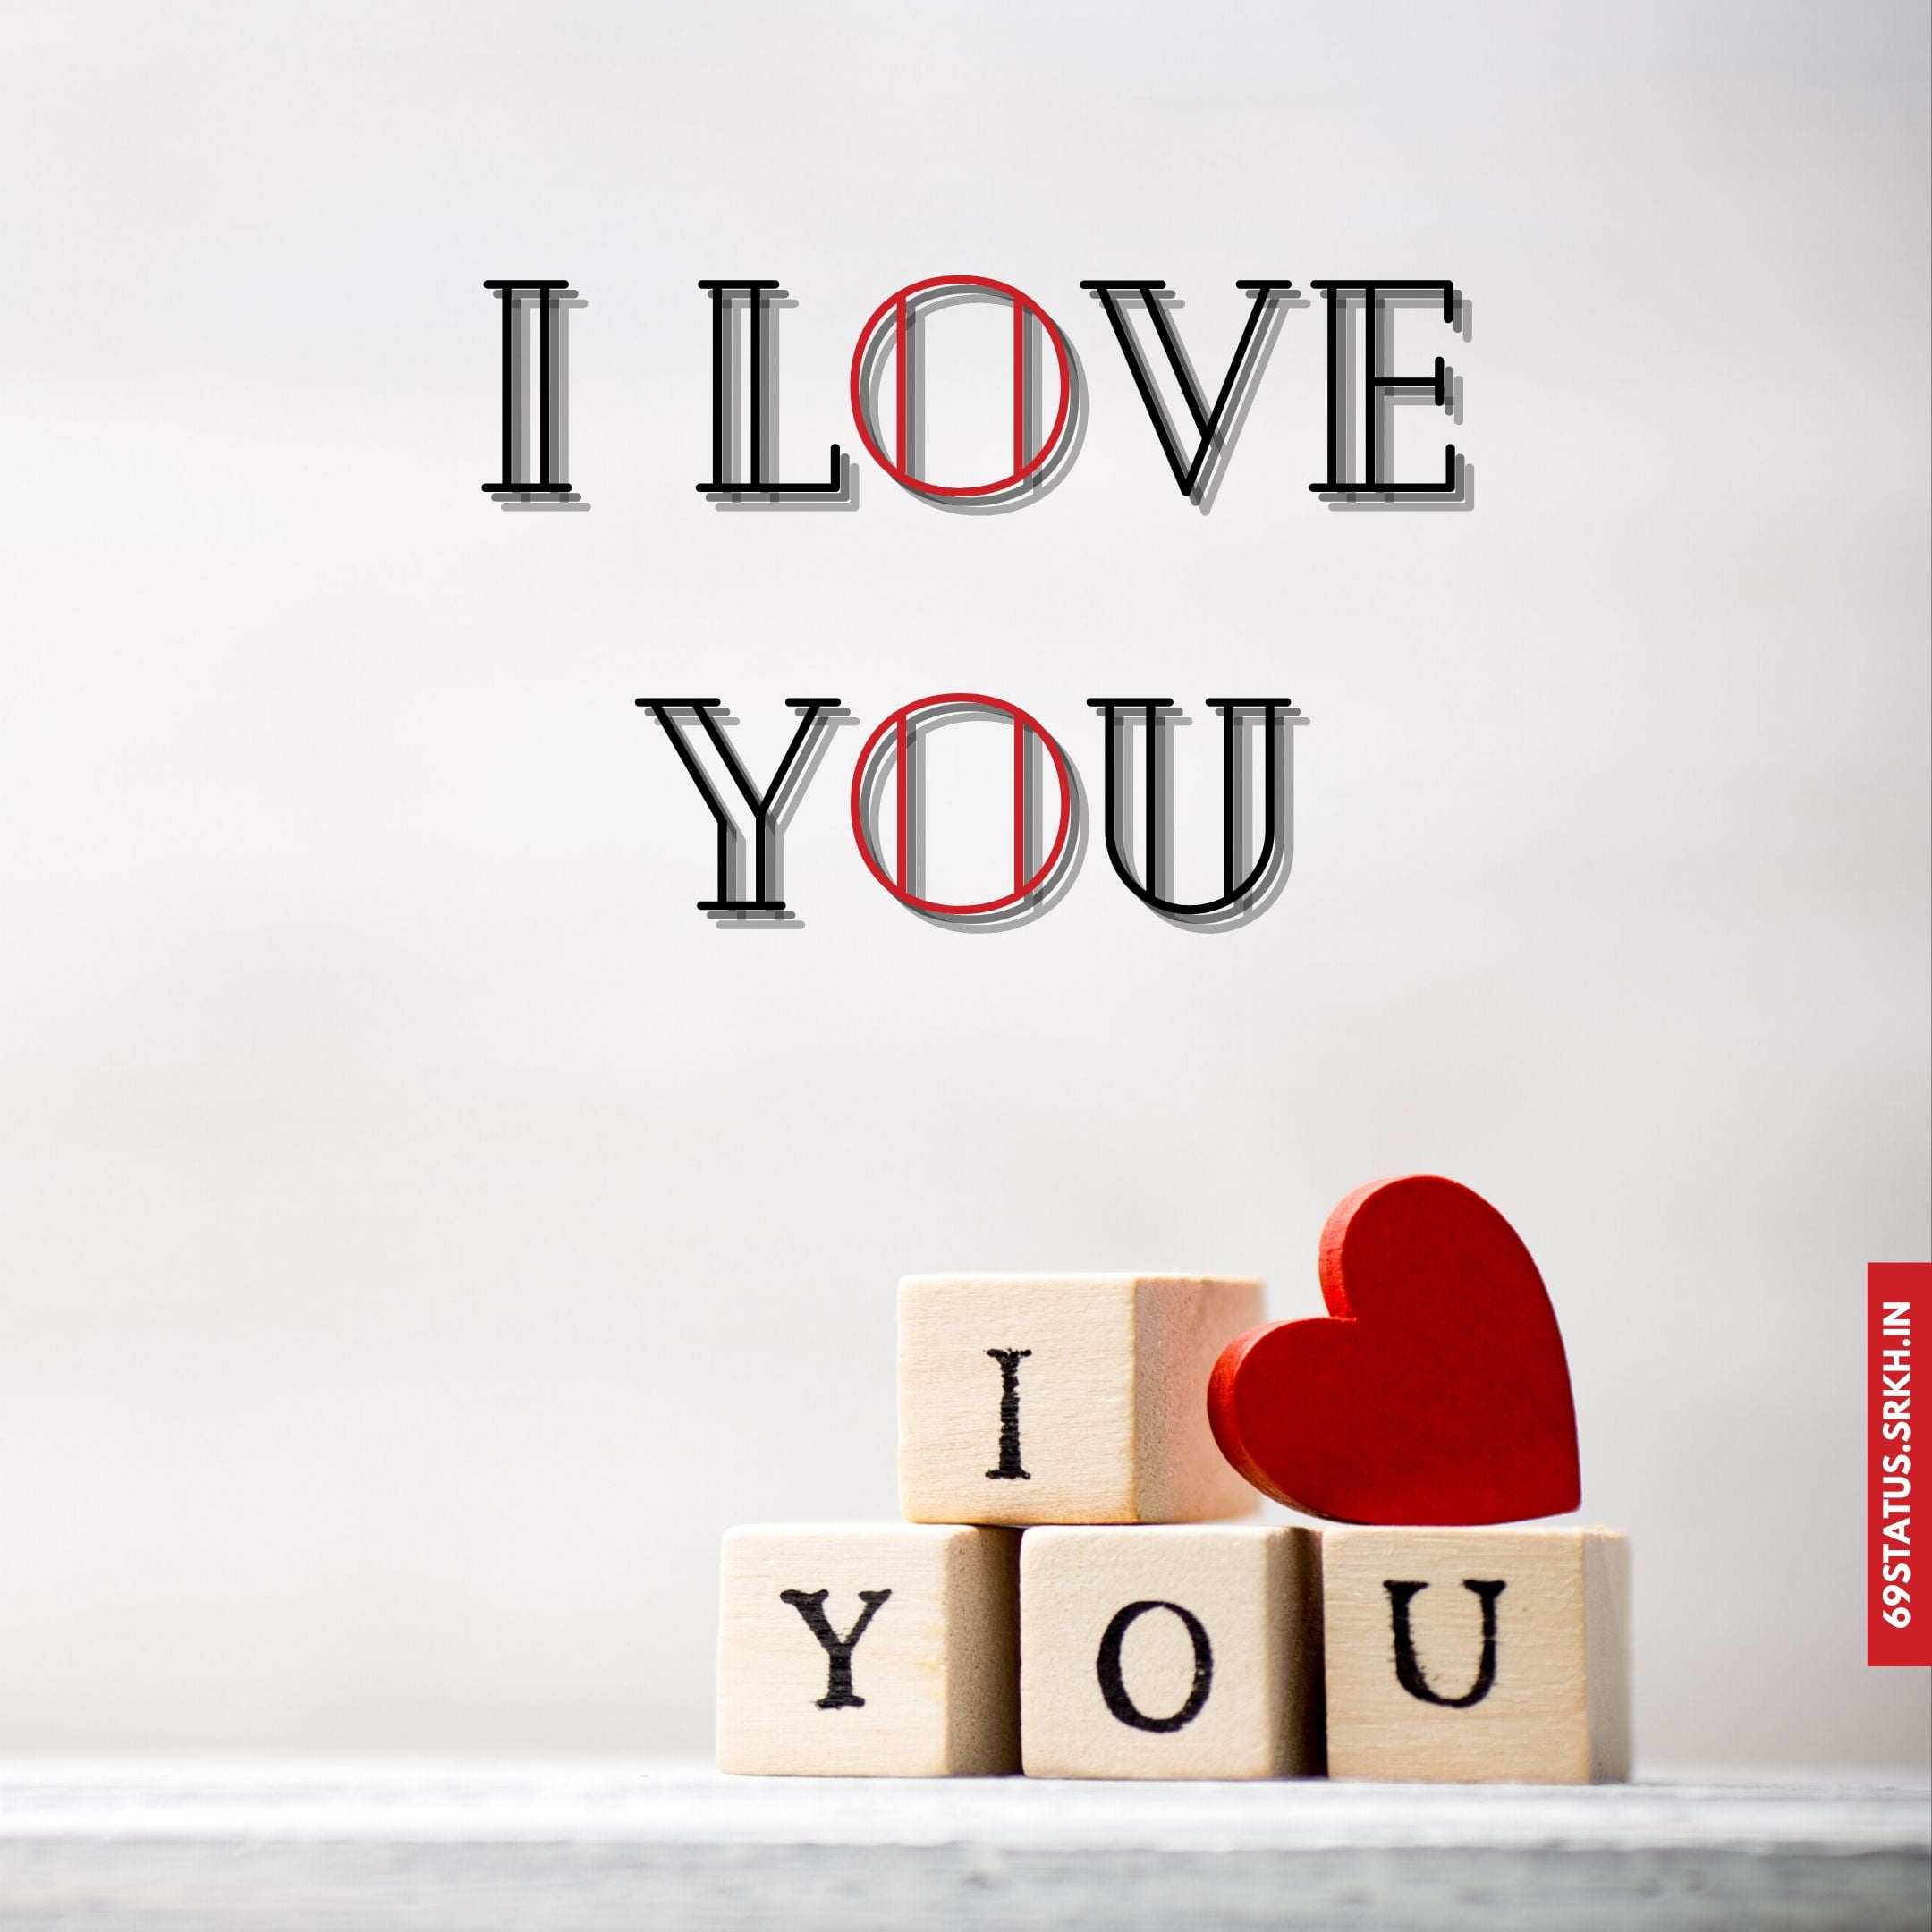 🔥 I Love You blood images hd Download free - Images SRkh